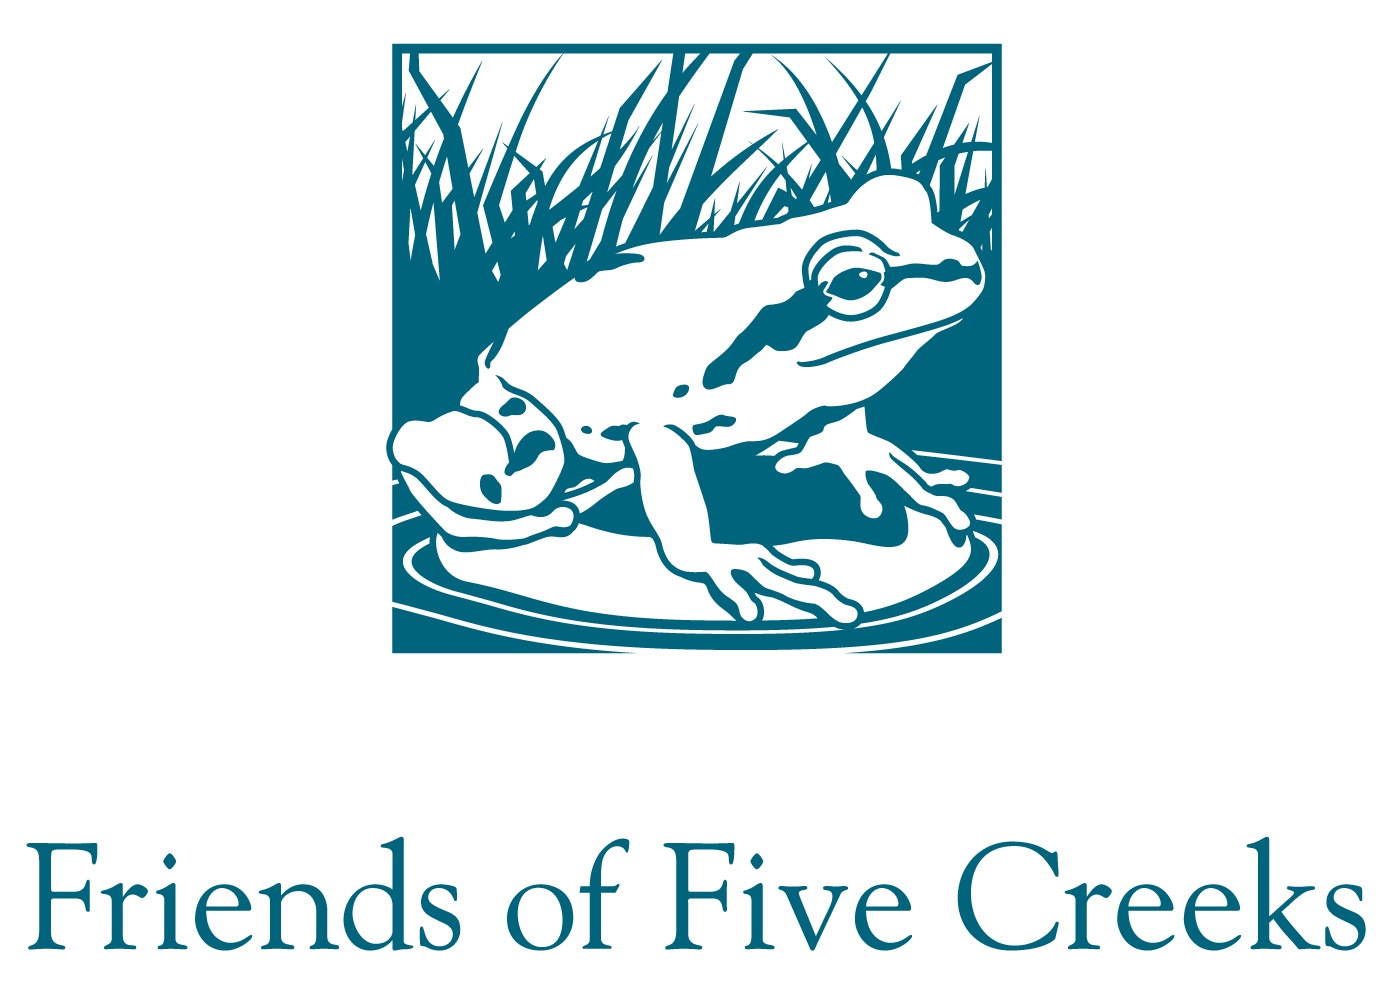 Friends of Five Creeks logo - link opens in new window